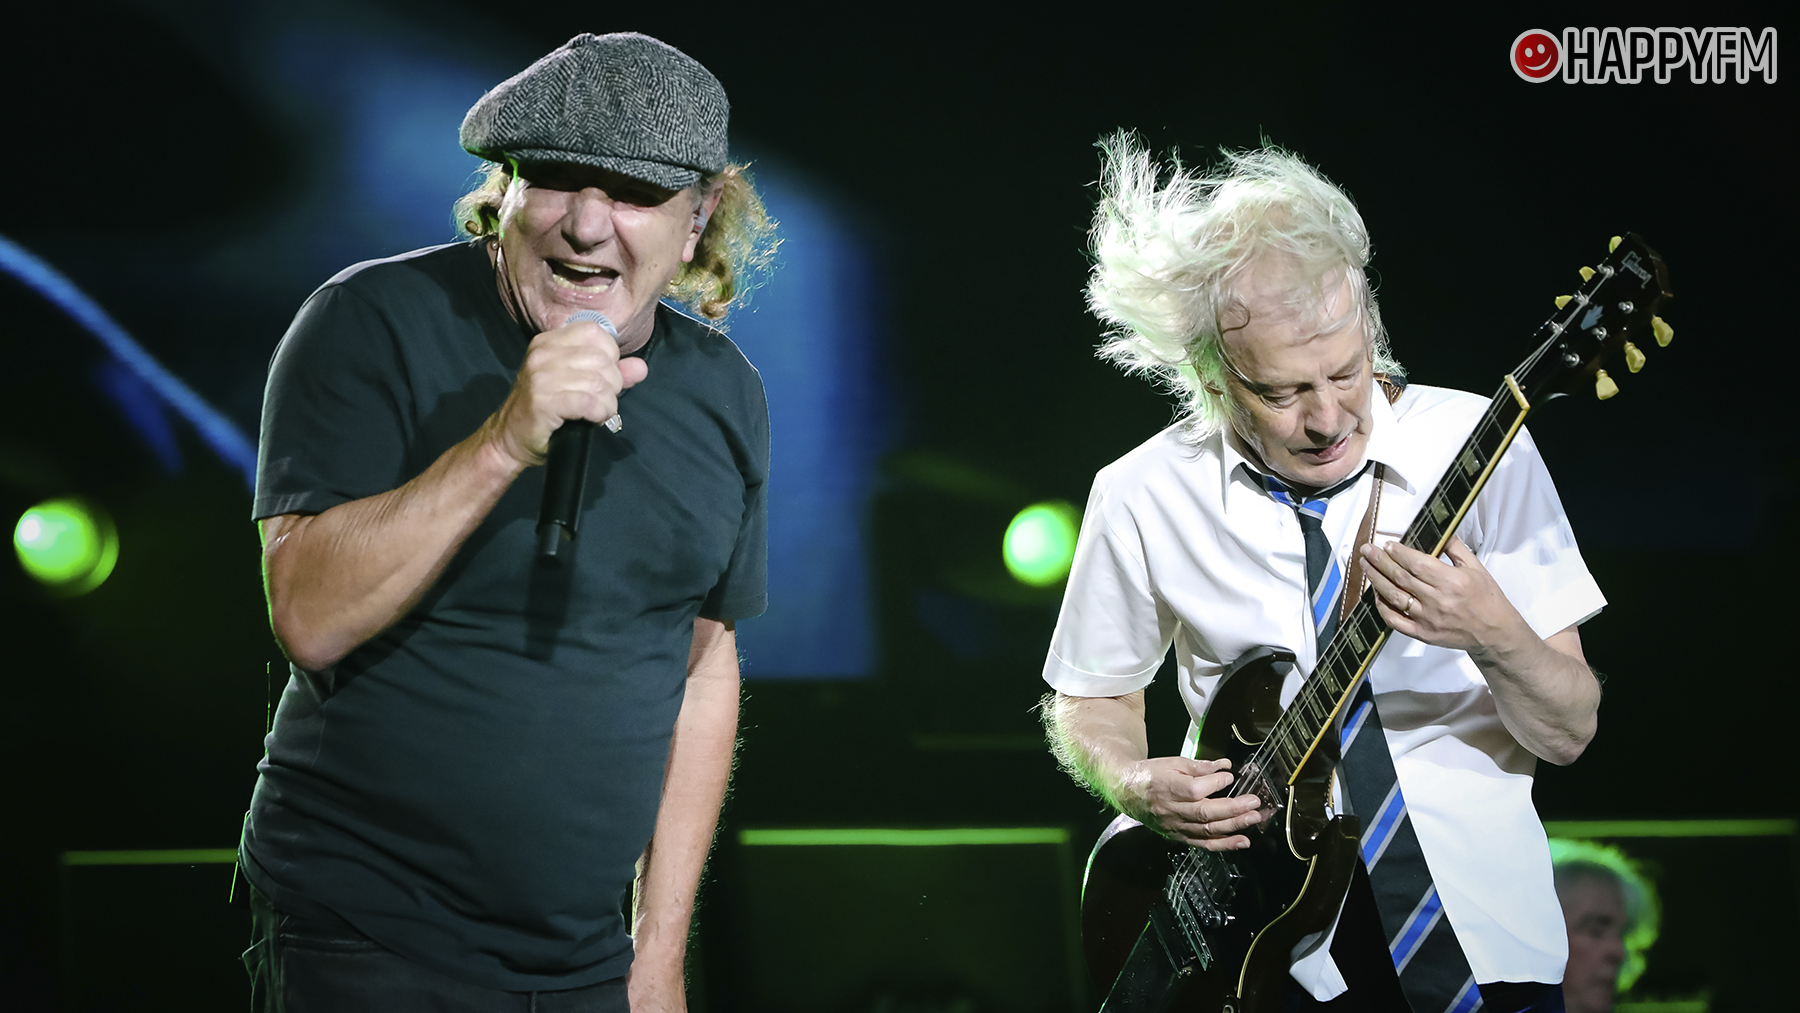 La legendaria banda AC/DC anuncia gira europea